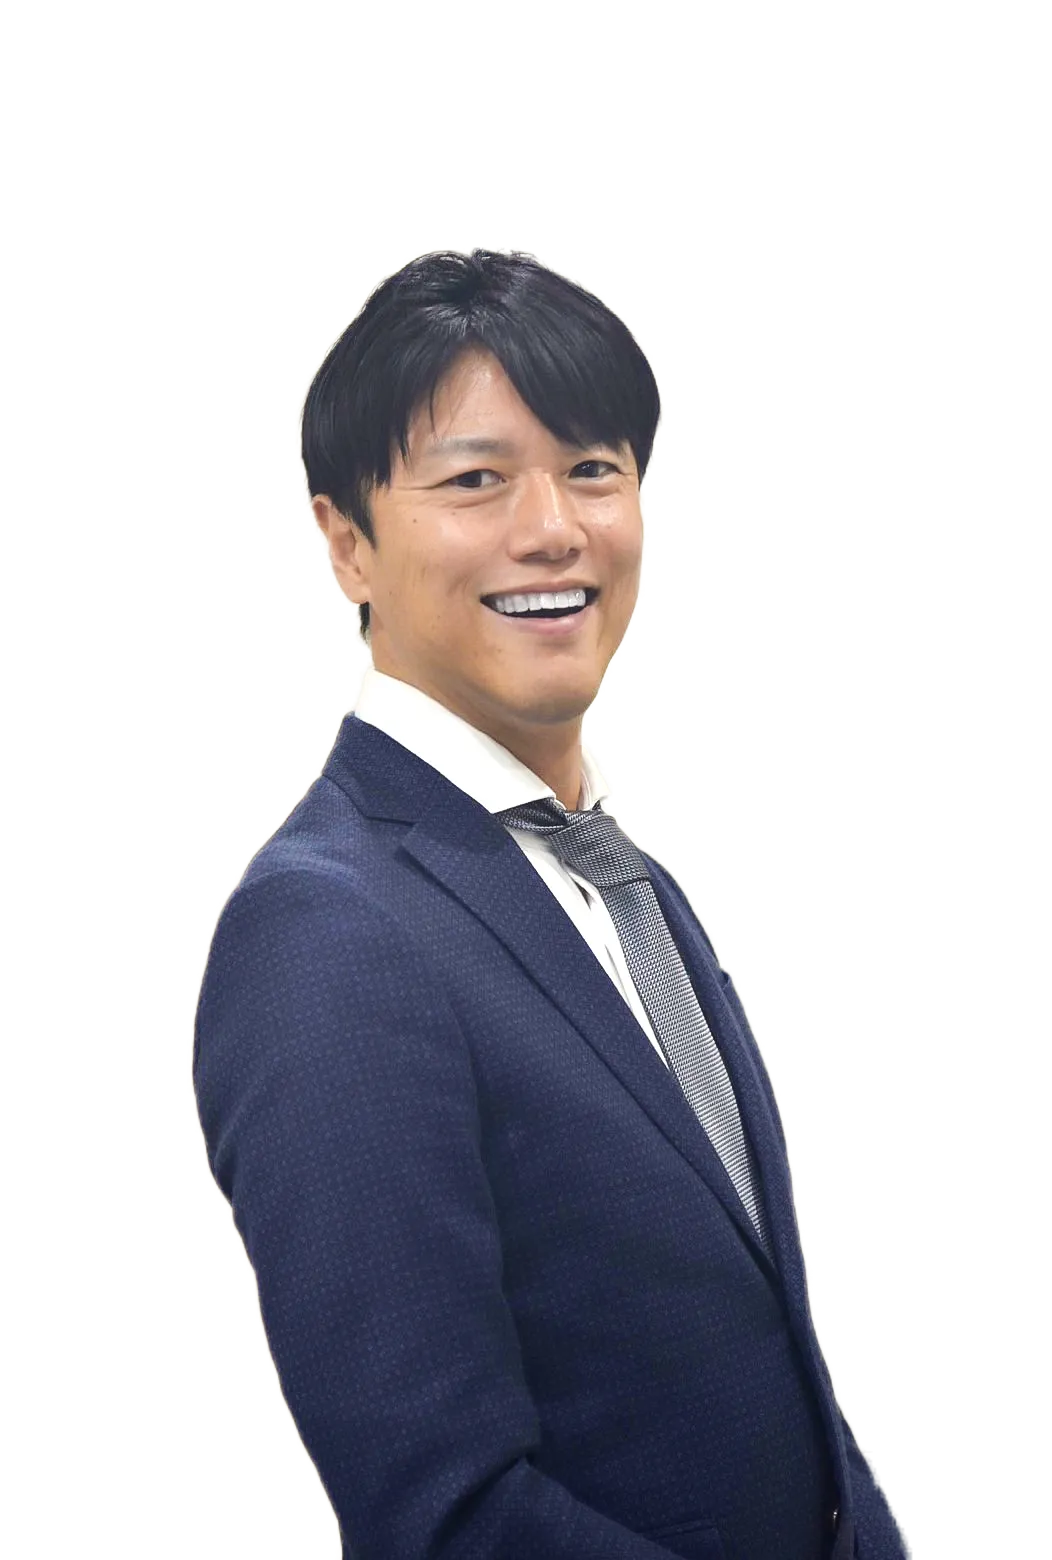 キャリアネットワーク代表取締役社長 中山喜雄